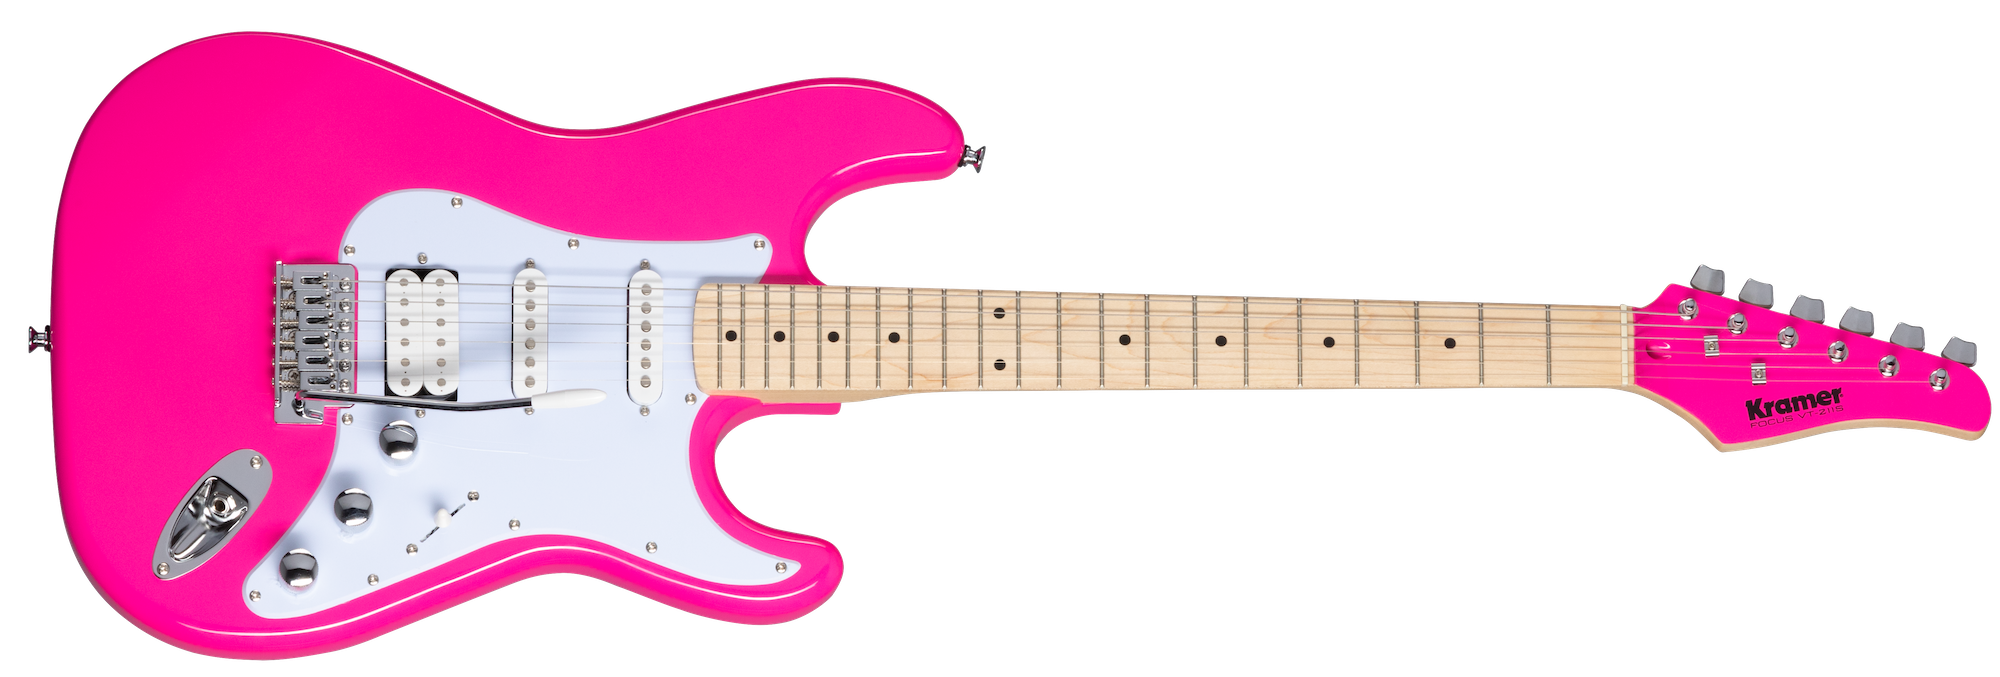 Kramer Focus VT-211S elektrisk gitar